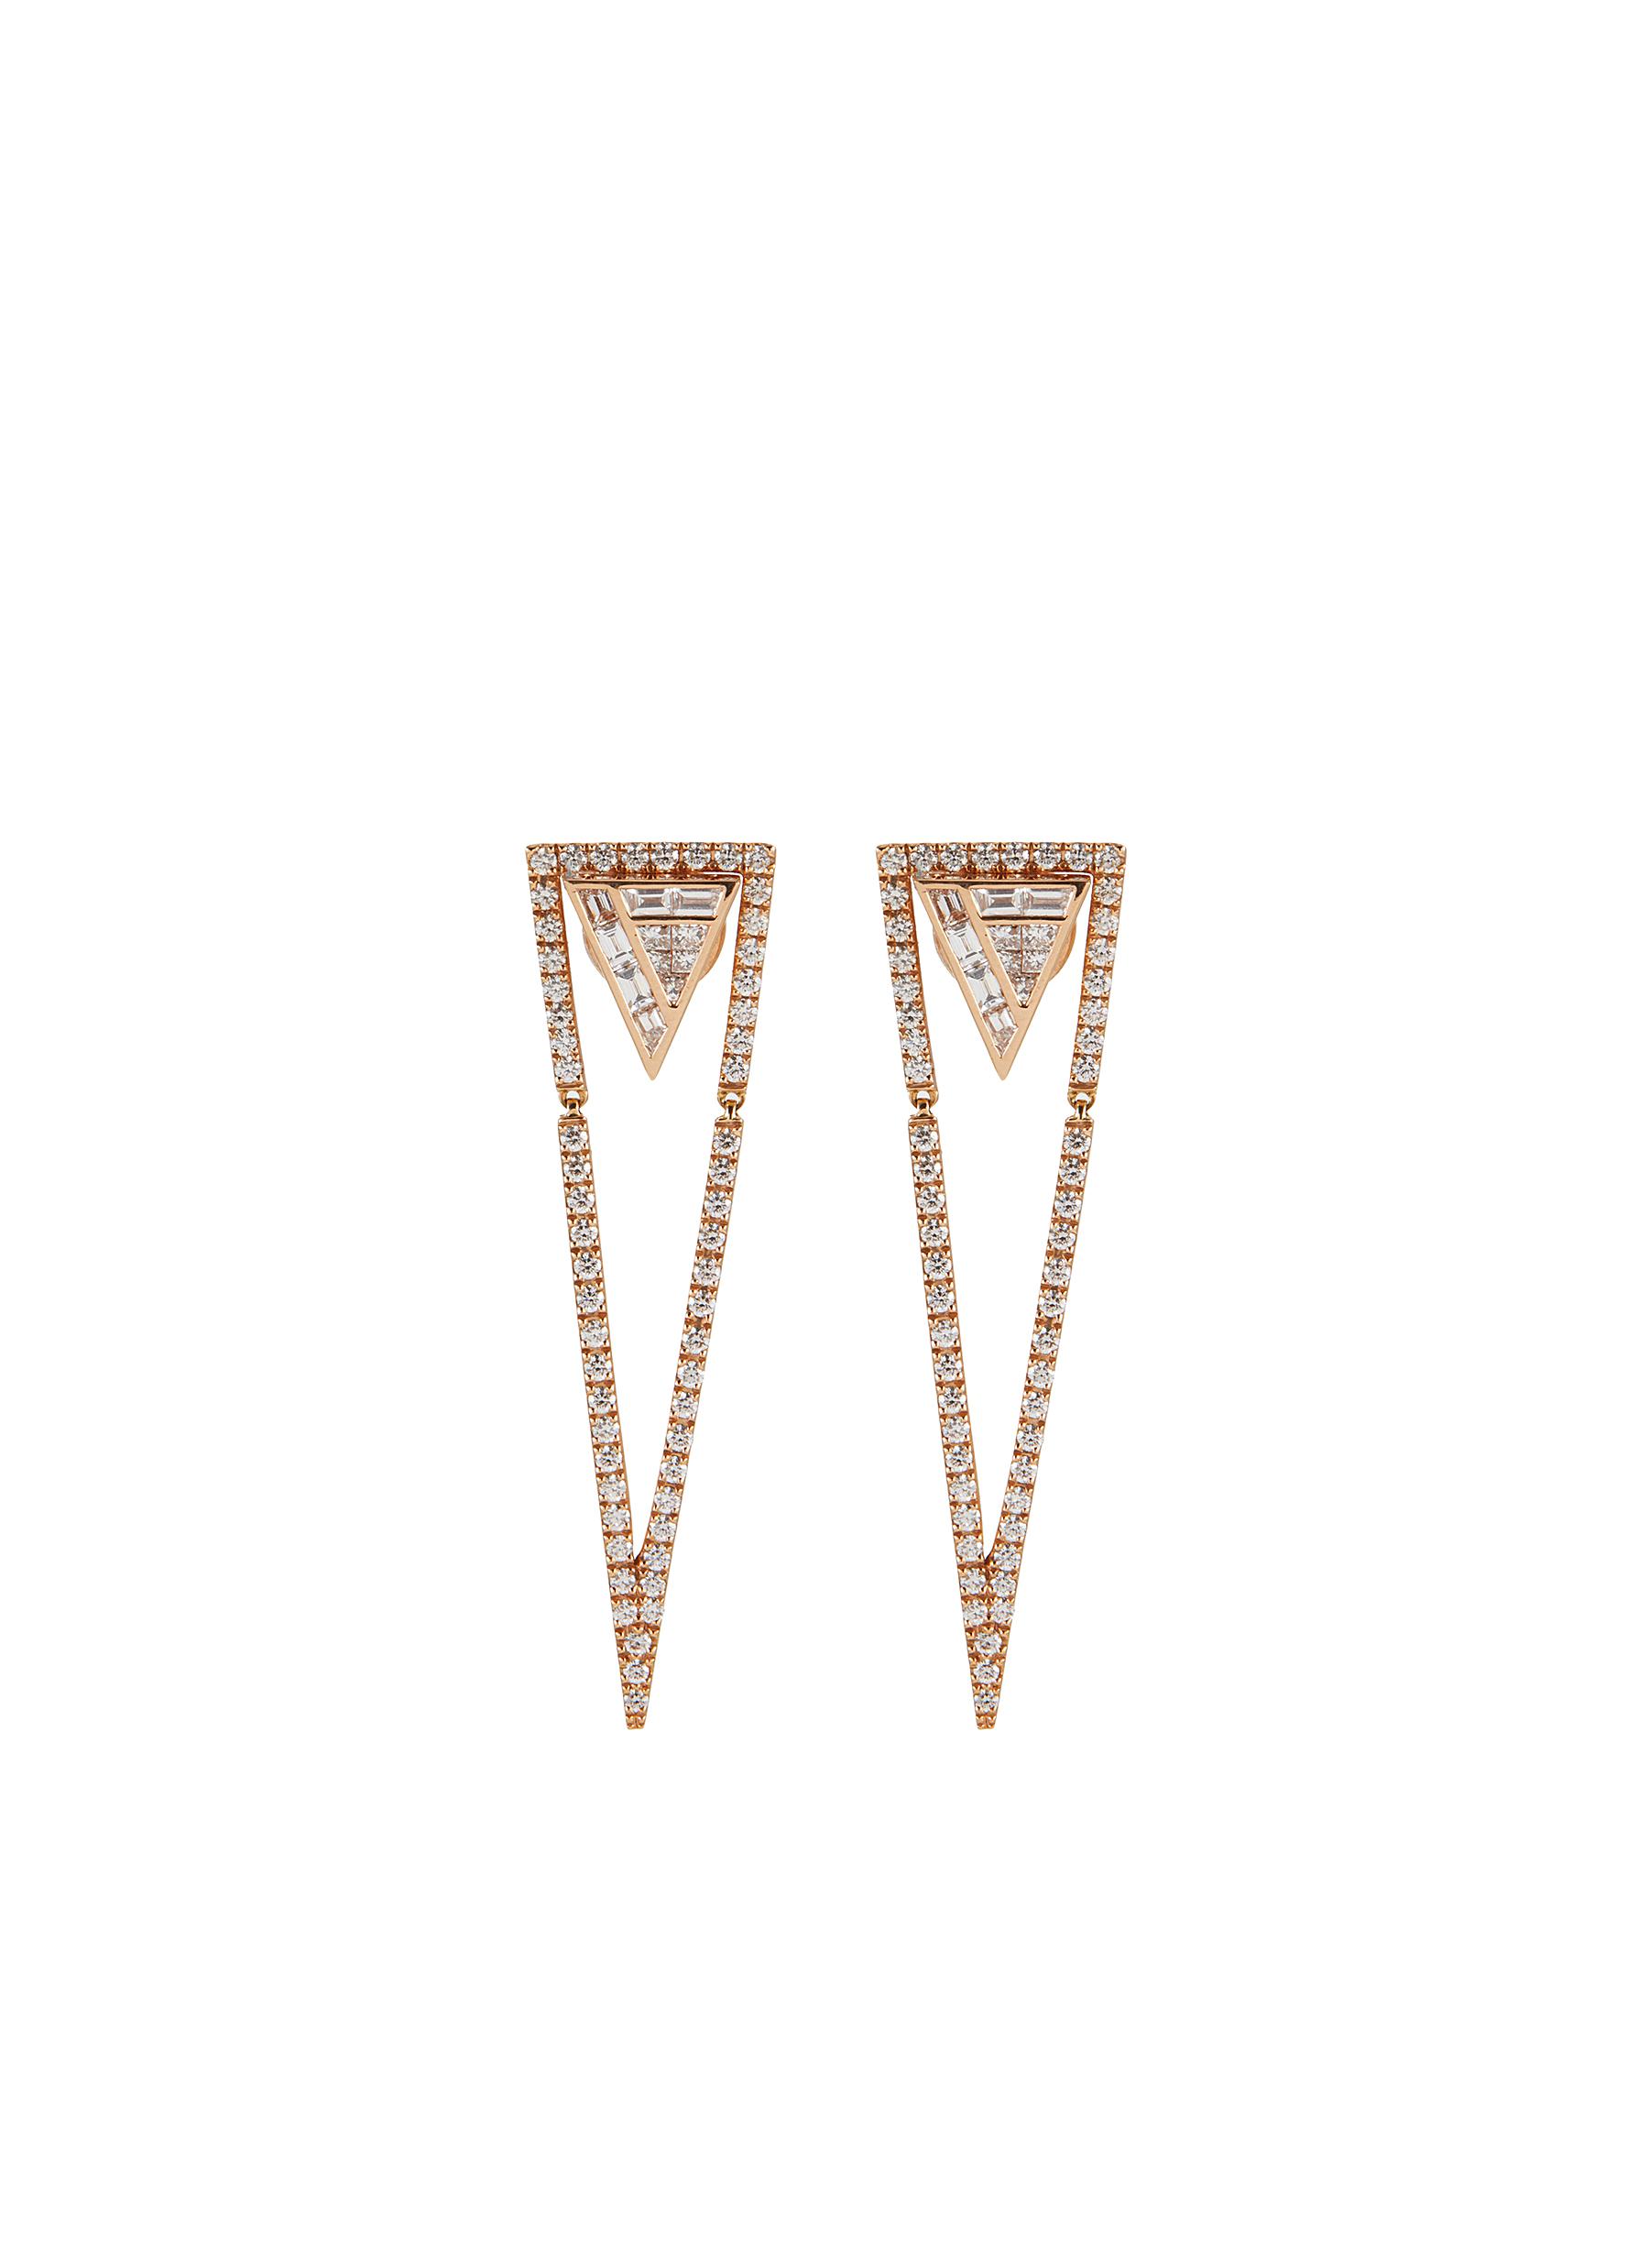 KAVANT & SHARART ‘GeoArt' Back To Basic Diamond 18K Rose Gold Triangular Stud Earrings